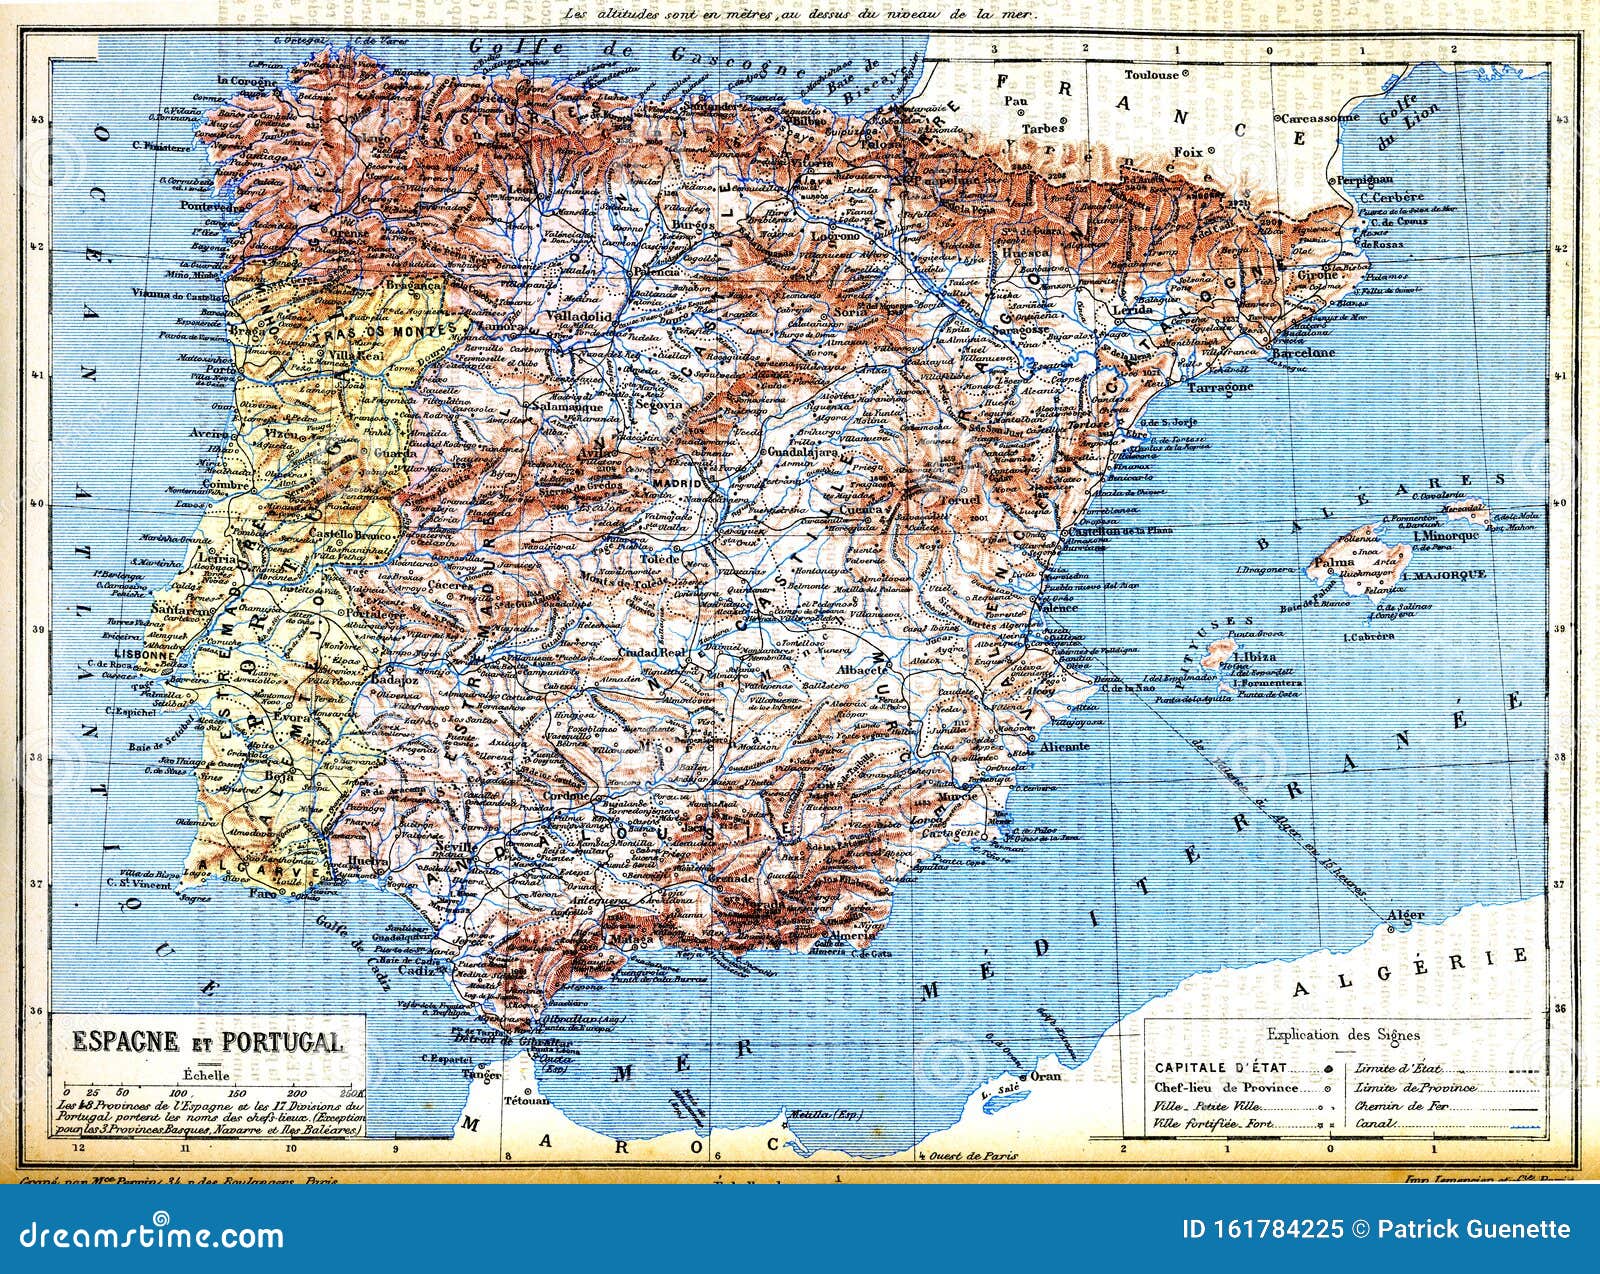 National Geographic Mapa Espanha e Portugal